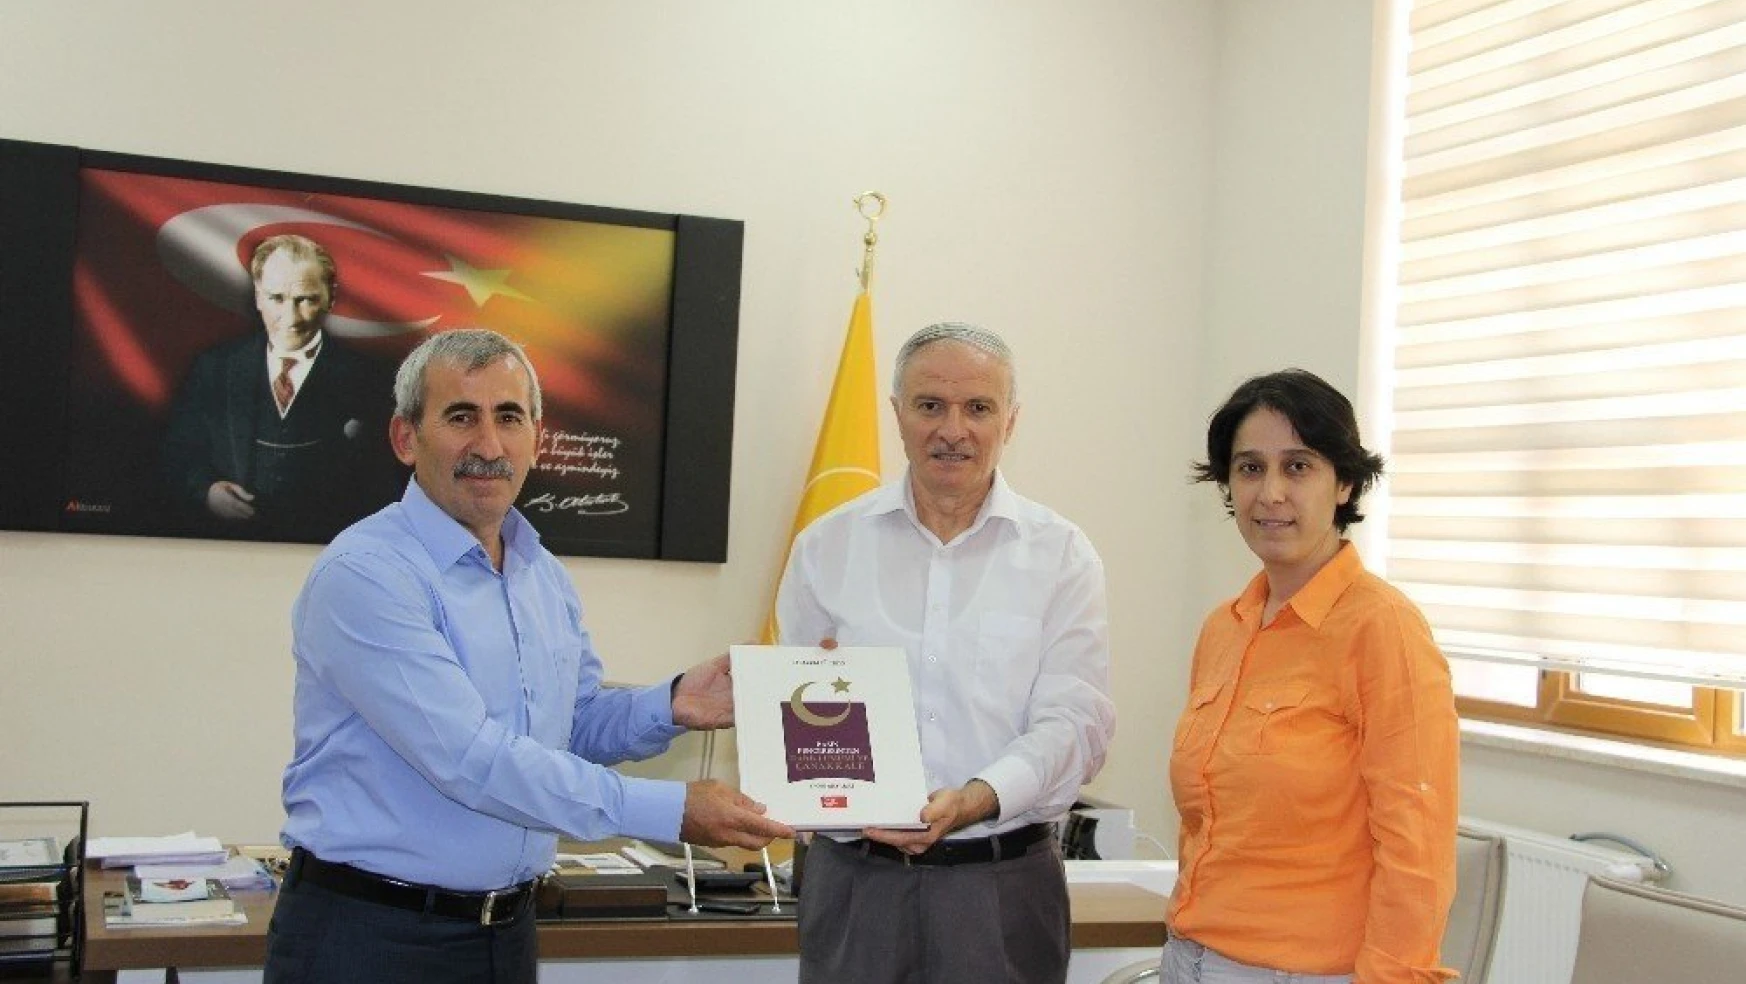 İletişim Fakültesi Dekanı Prof. Dr. Mehmet Önal:
